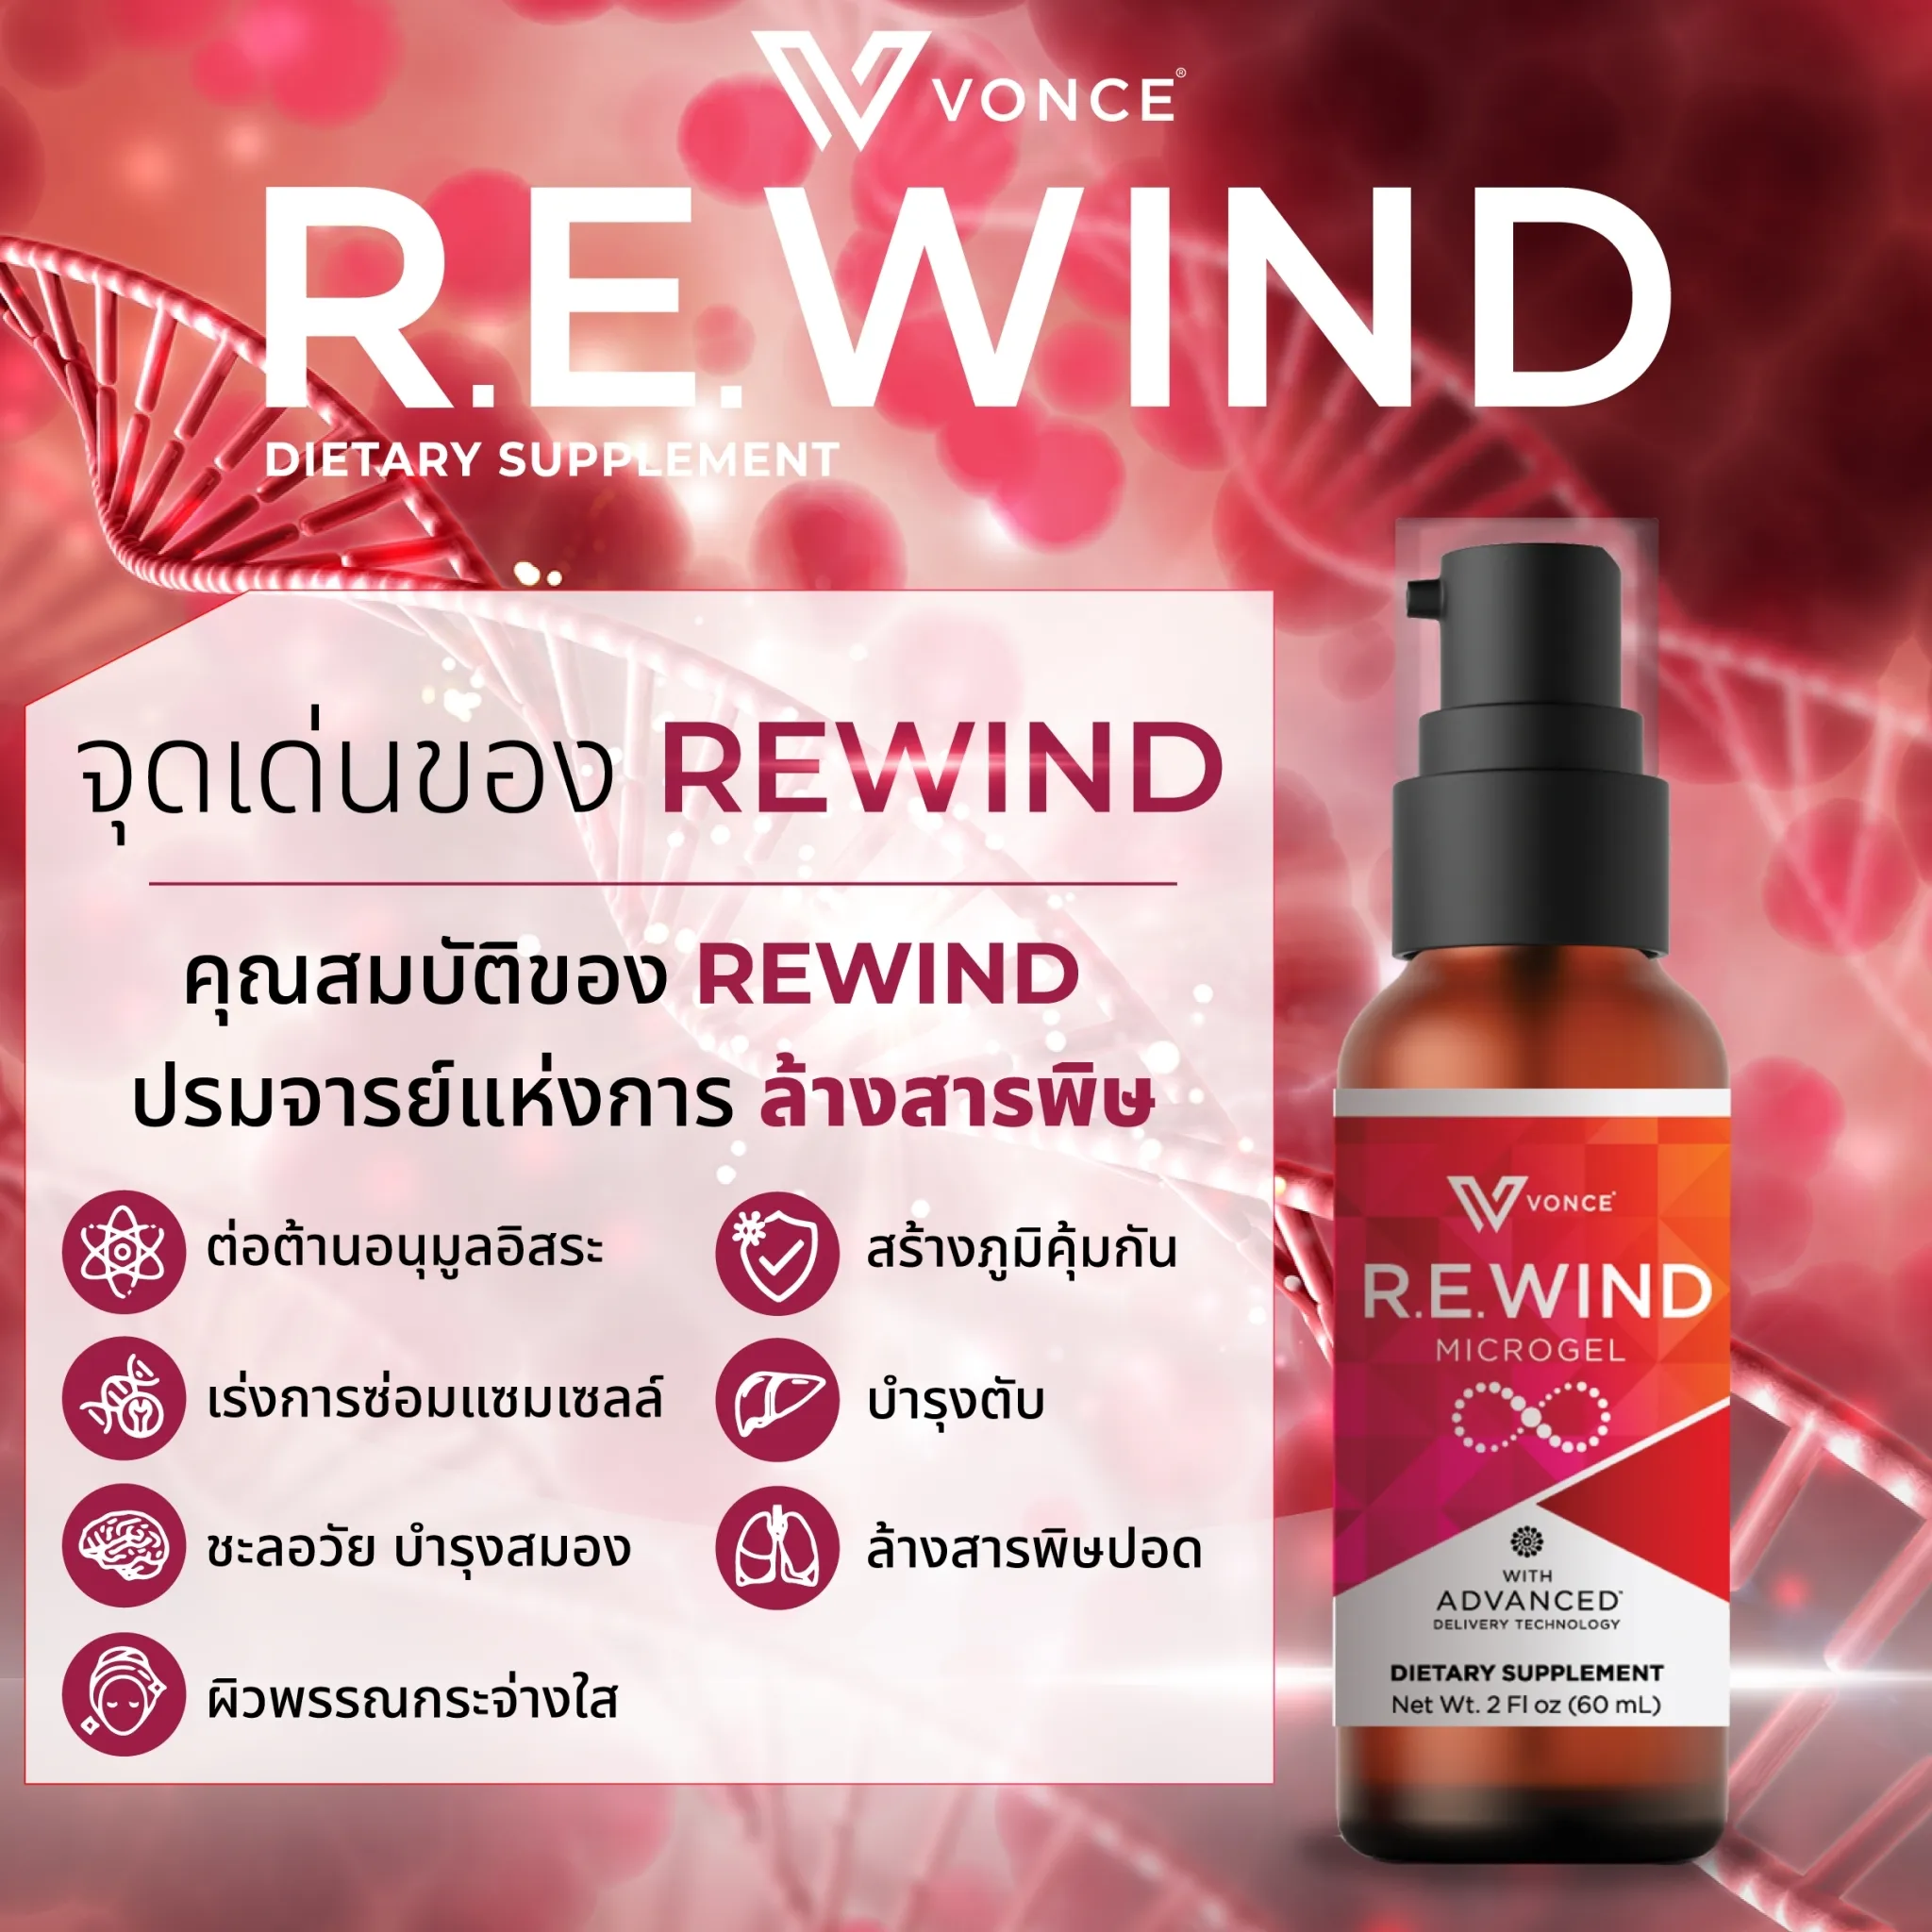 r.e.wind rewind รีไวนด์ ชะลอวัย ฟื้นฟูเซลล์ ต้านอนุมูลอิสระ เสริมภูมิต้านทาน รักษาตับ (1)